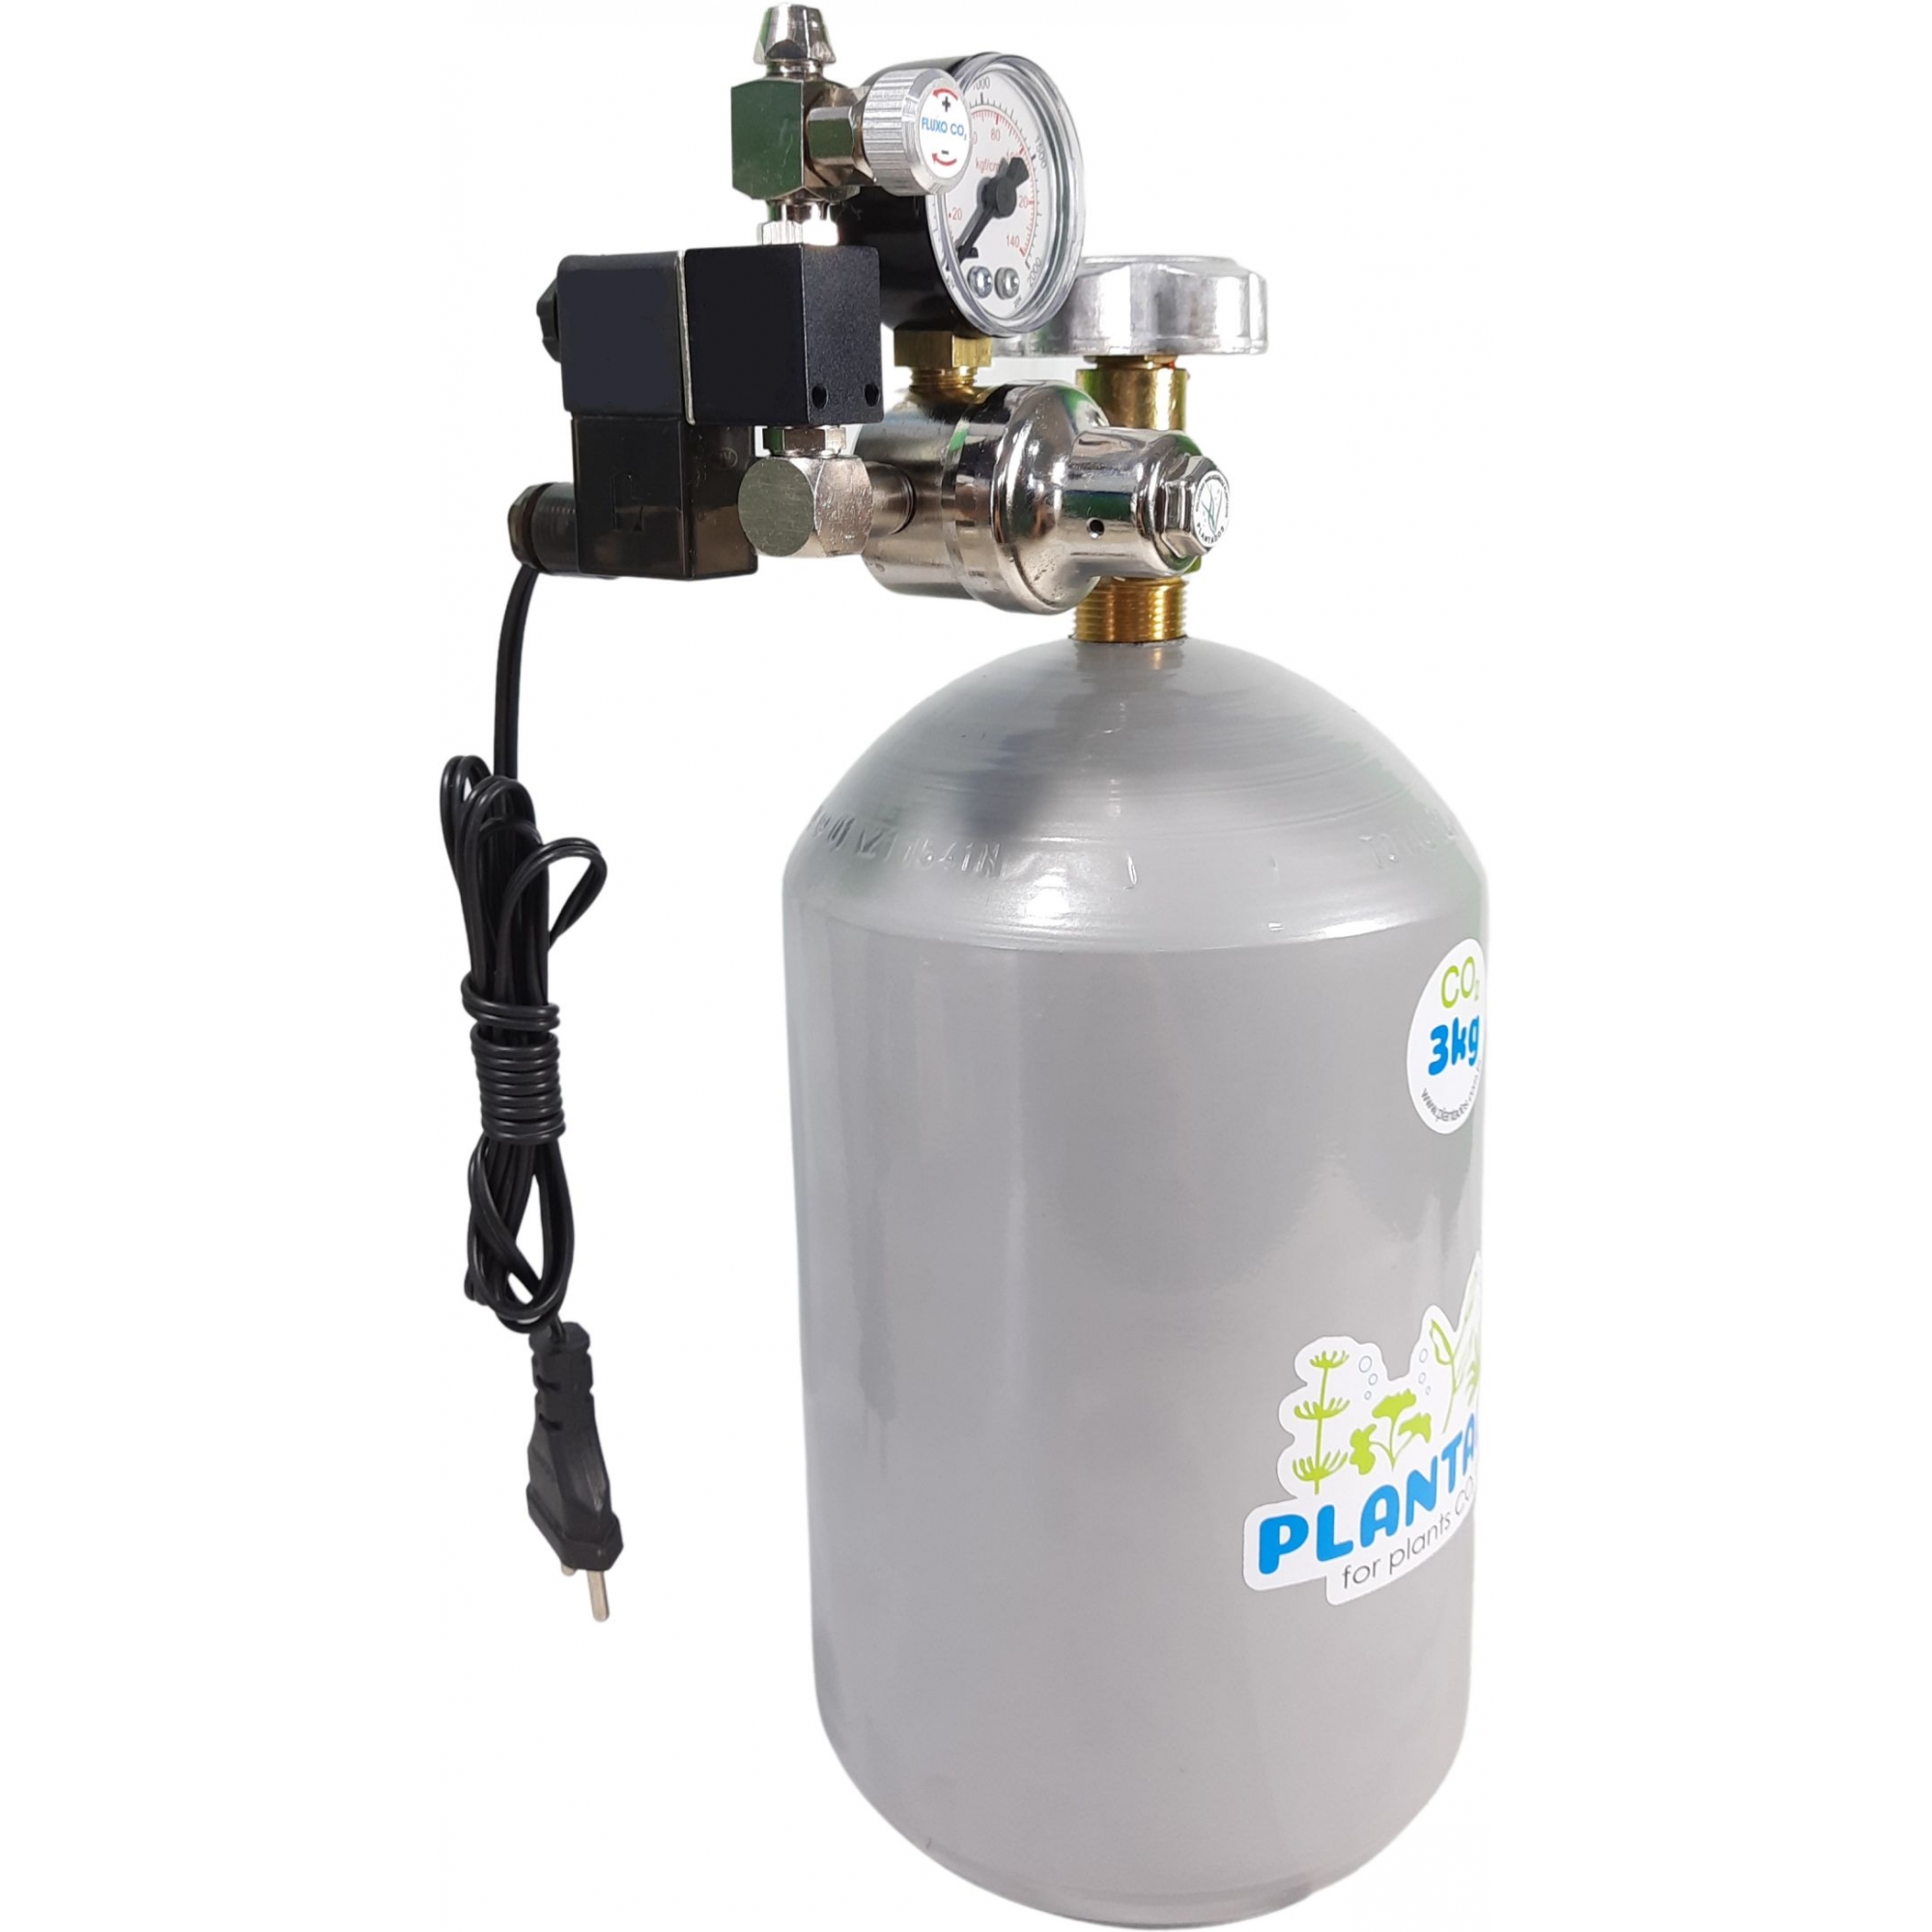 Kit CO2 c/ cilindro de aço 3kg e 1 saída p/ aquário